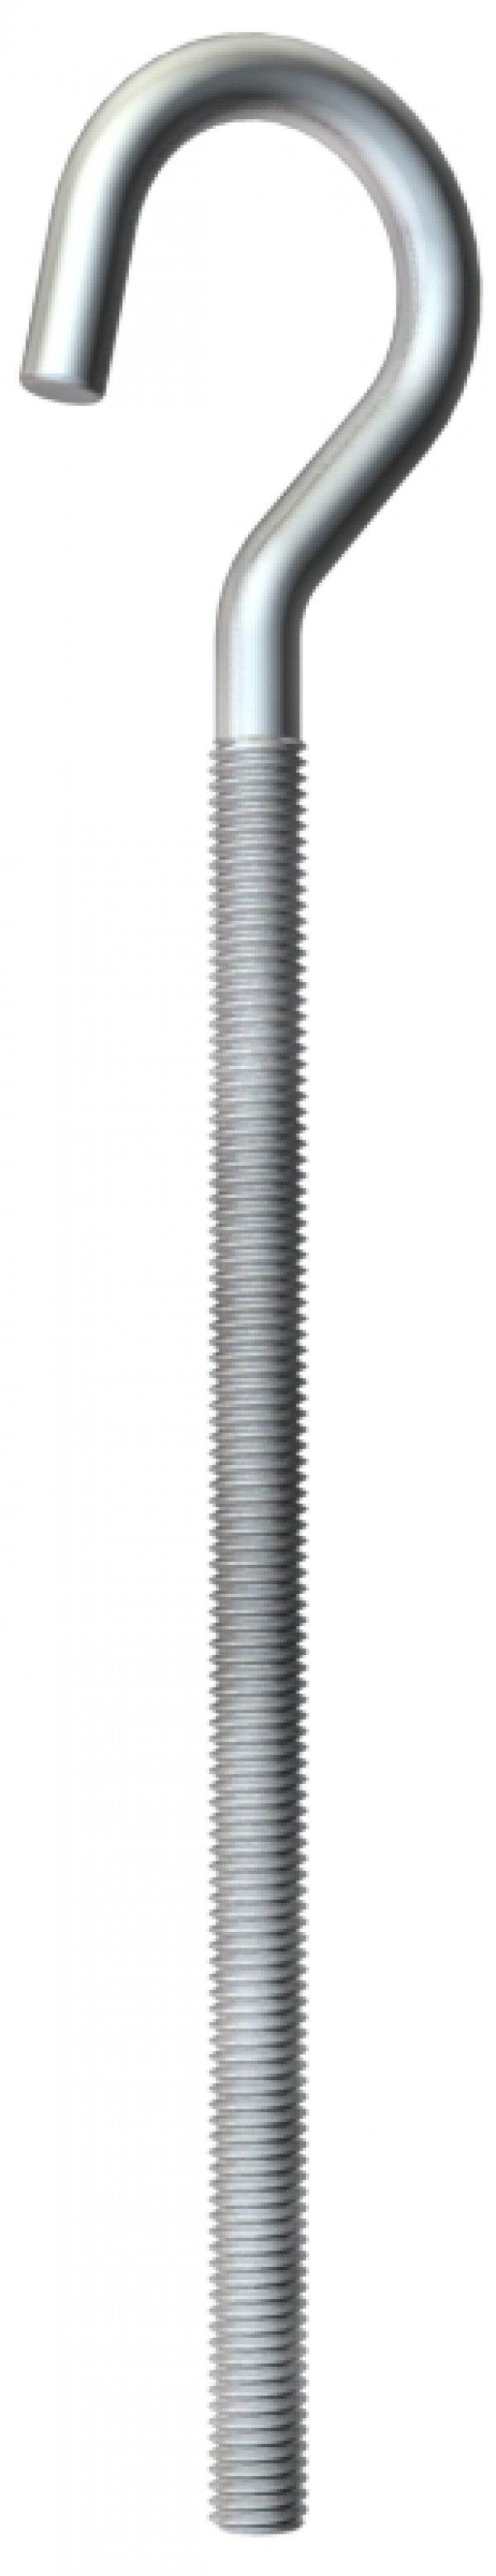 3470210 - OBO BETTERMANN Крюк потолочный M6x95мм (867 M6X 95 G).